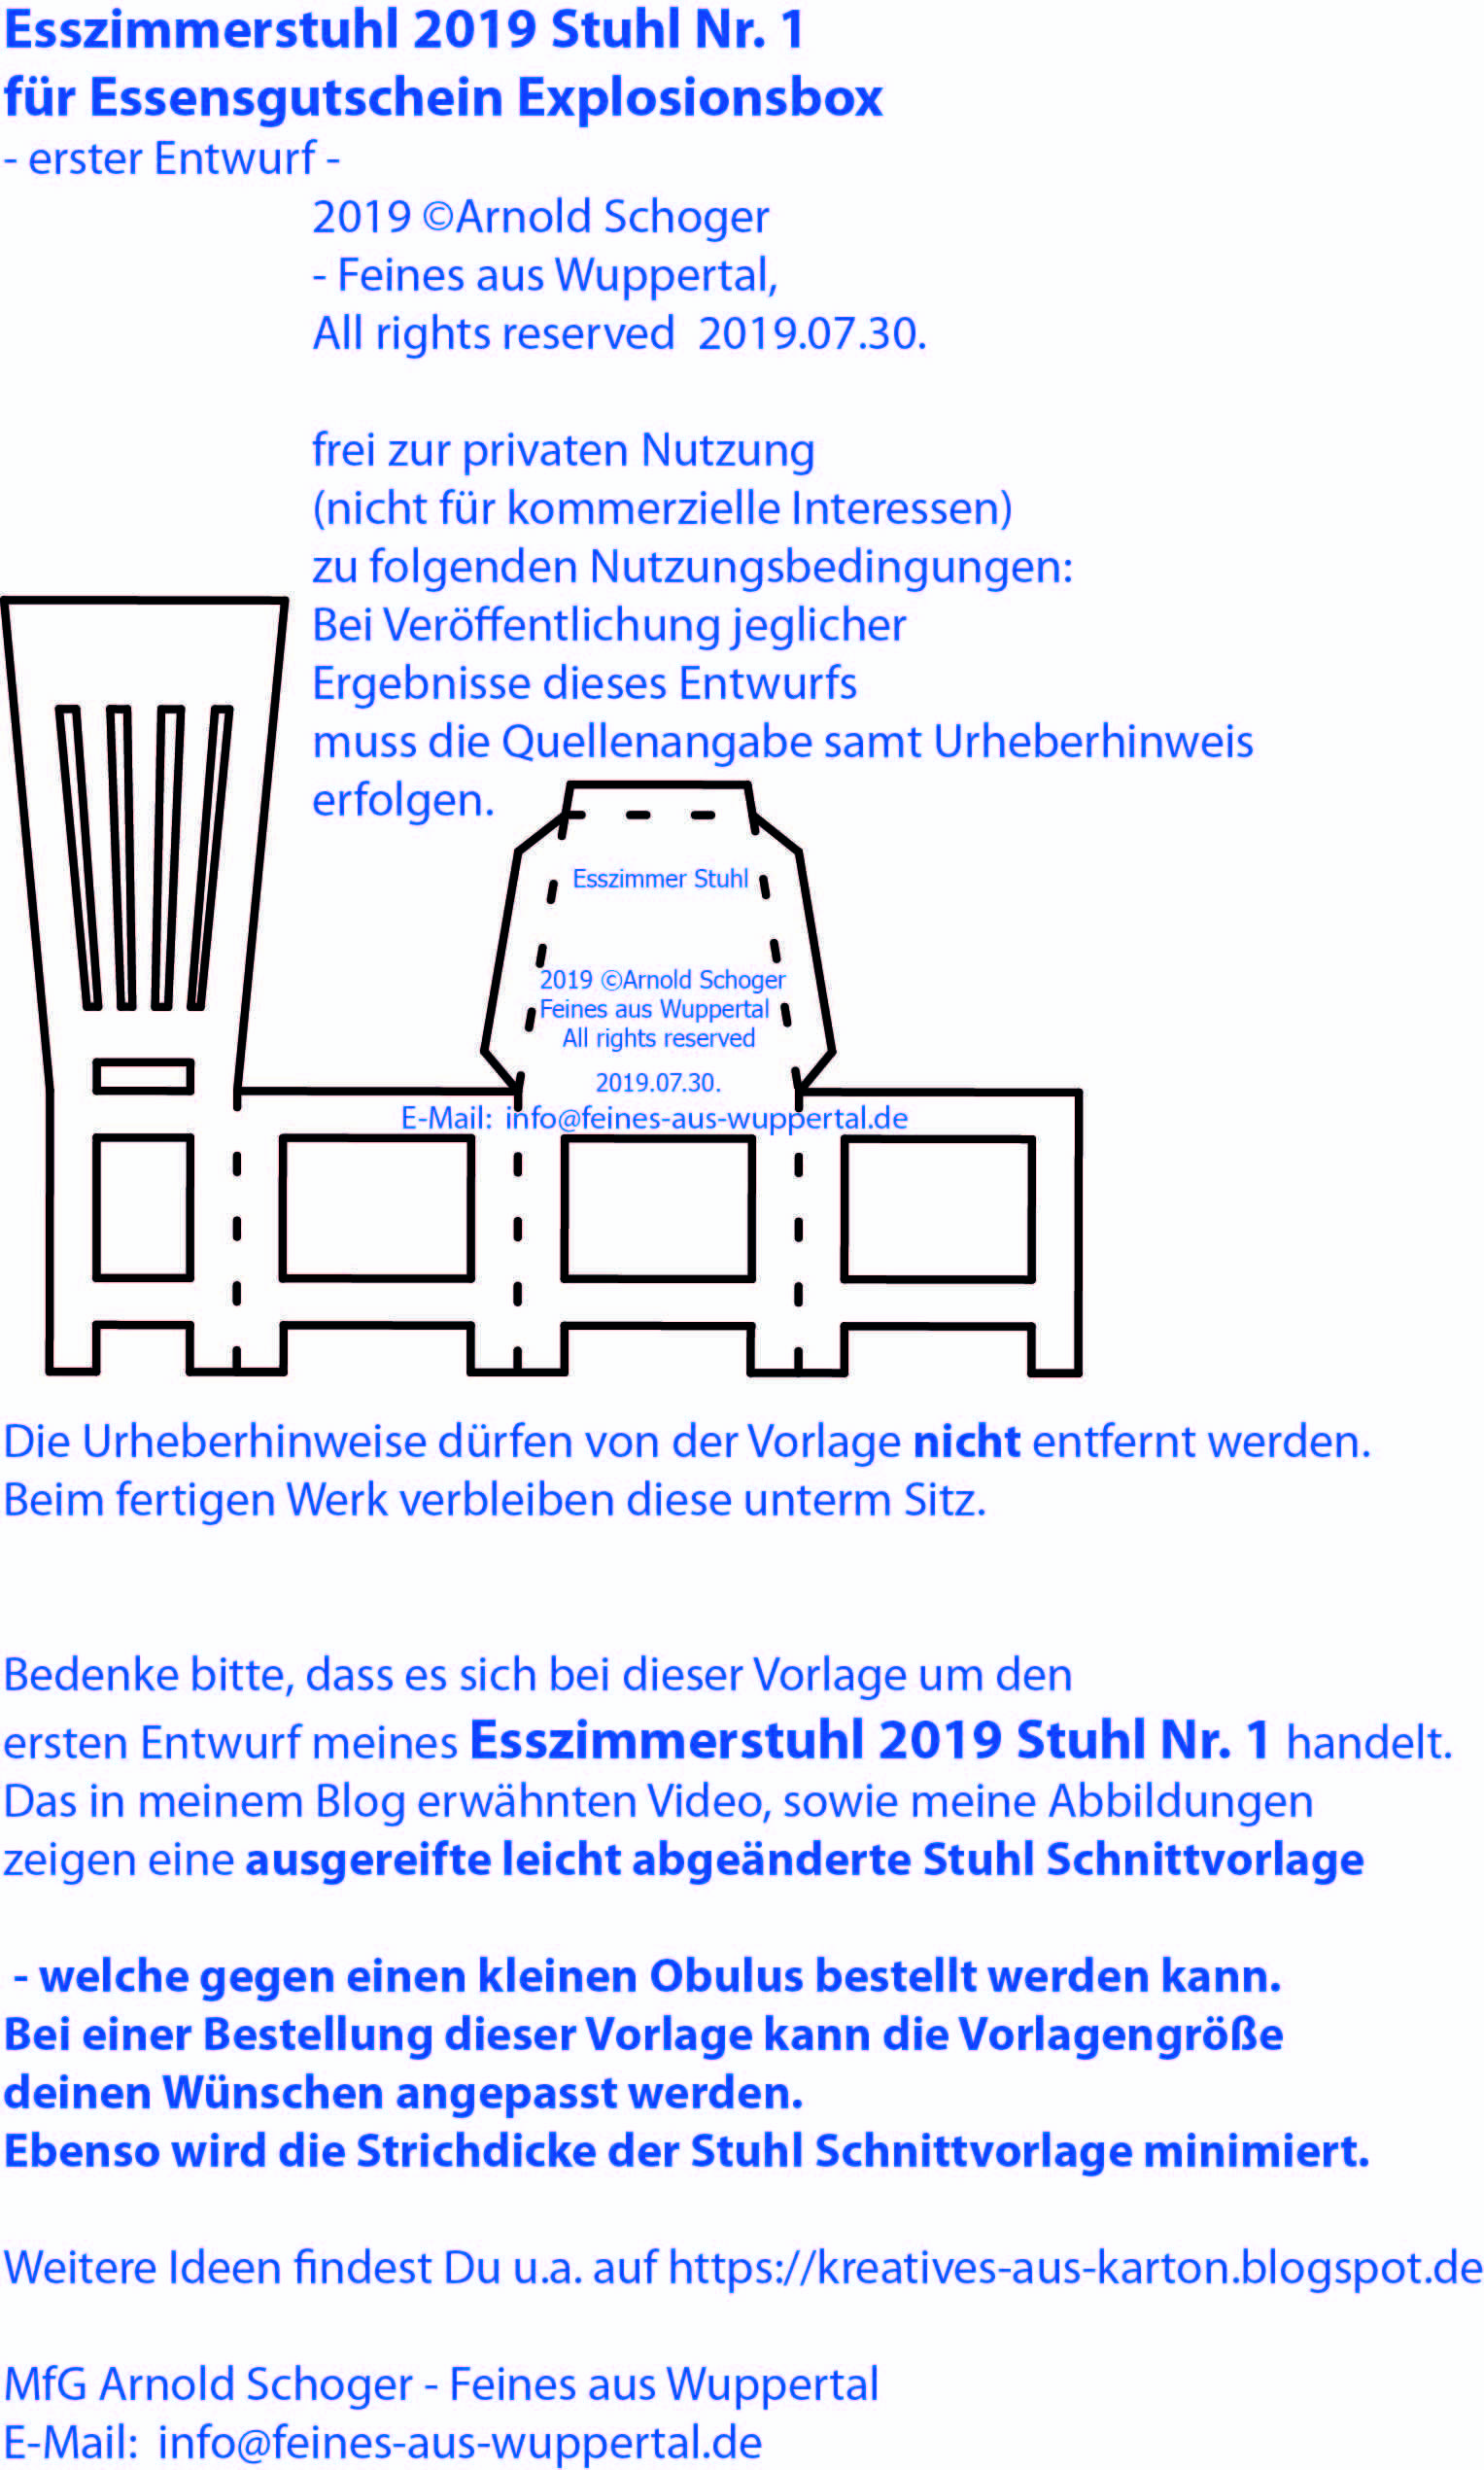 Bastelvorlage Stuhl Nr 1 Dinnergutschein Explosionsbox 2019 C Arnold Schoger Feines Aus Wuppertal Explosionsbox Koffer Basteln Basteln